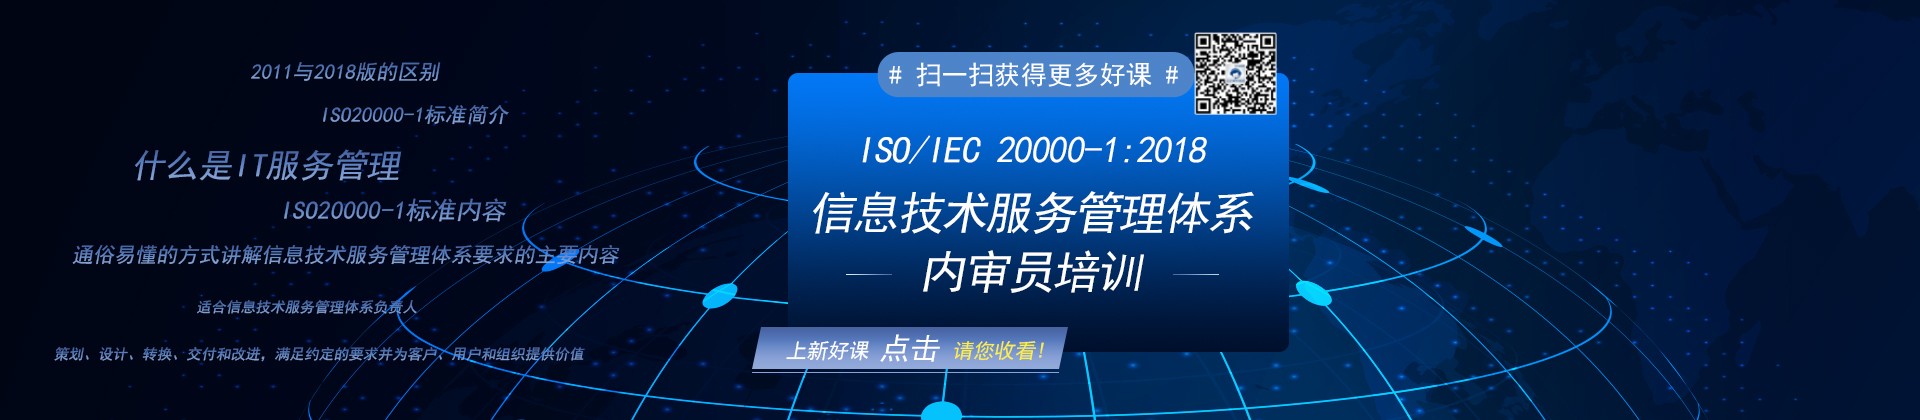 ISO/IEC 20000-1:2018信息技术服务管理体系内审员培训